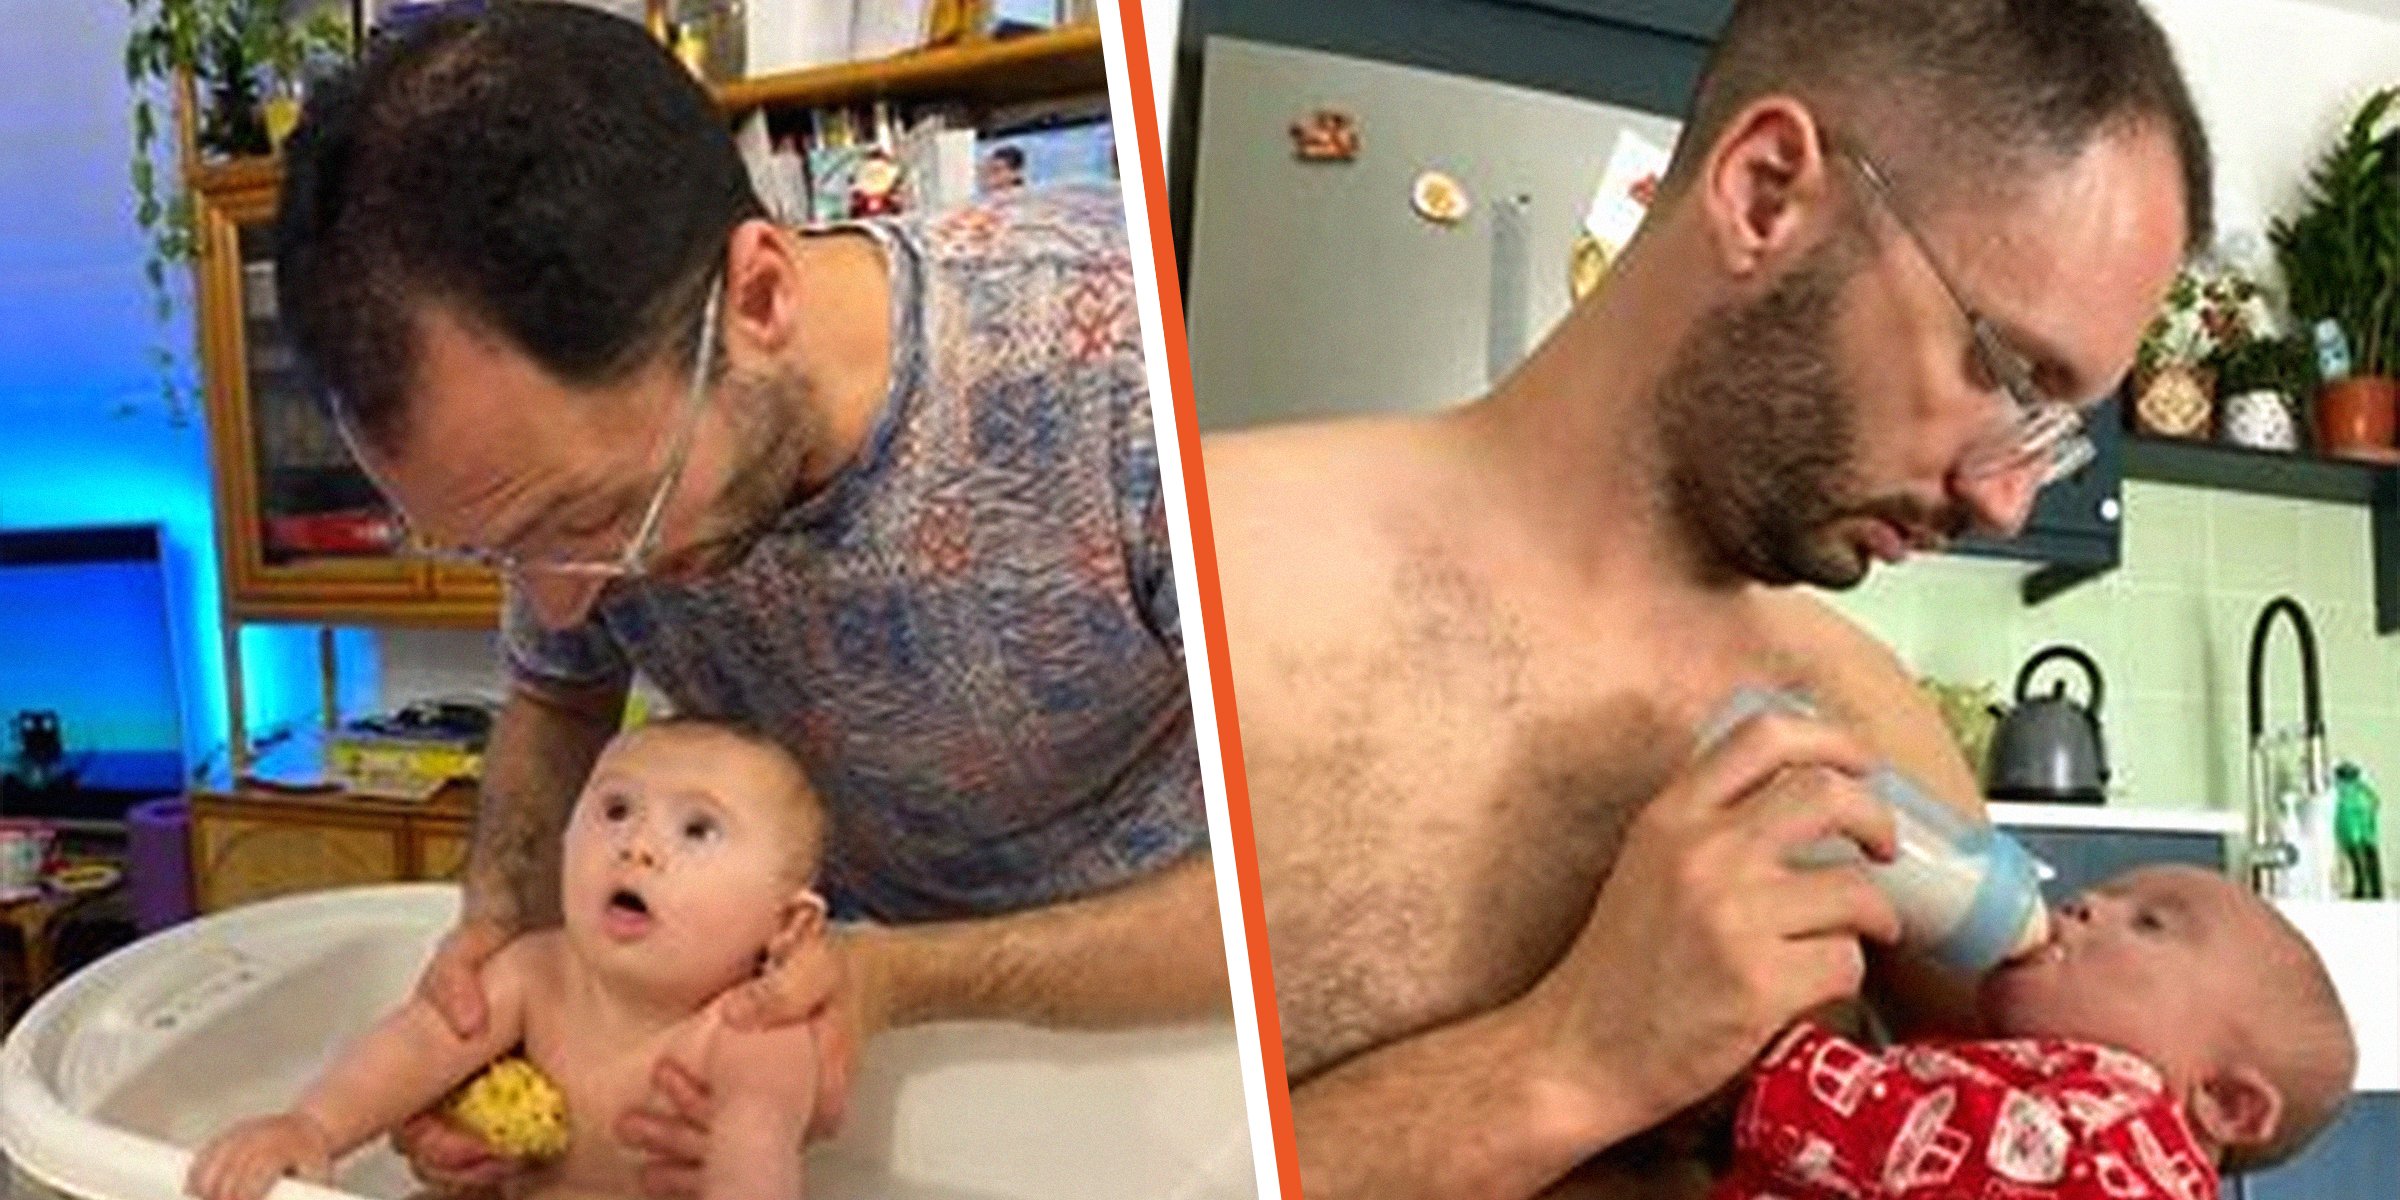 Ryan Sciberras baña y alimenta al bebé | Foto: facebook.com/KidspotAustralia